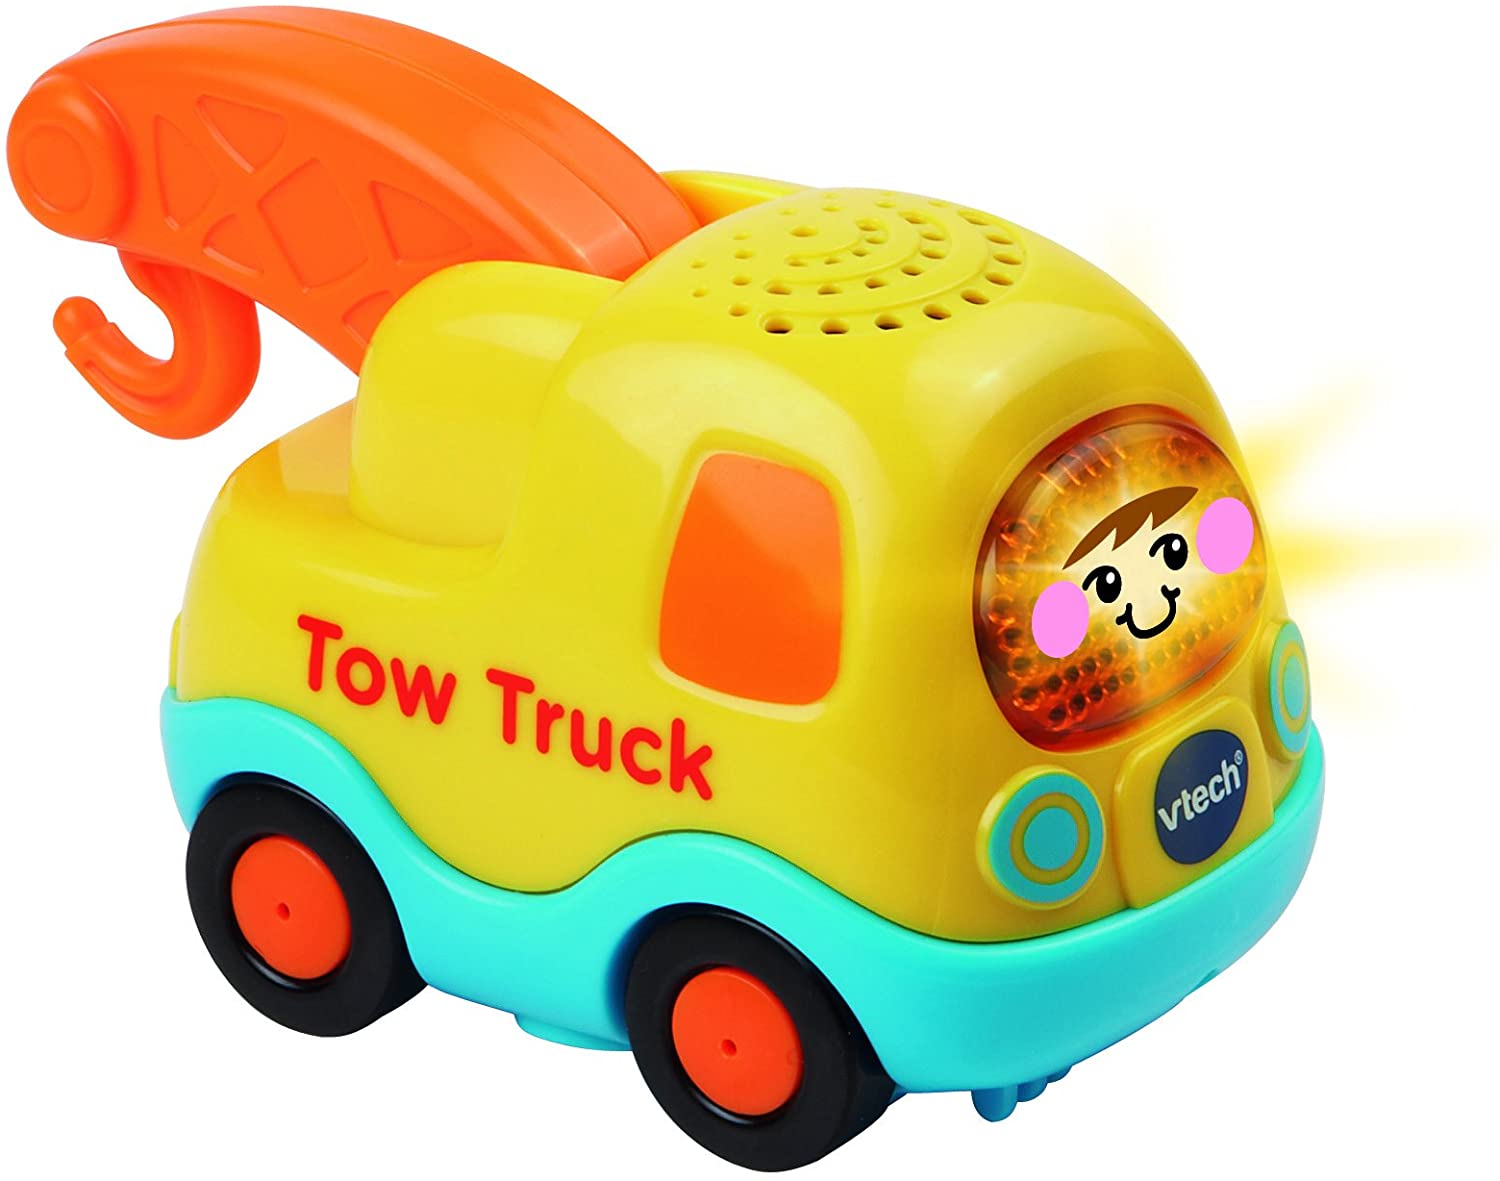 Vtech Toot Toot Tow Truck (80-126903)